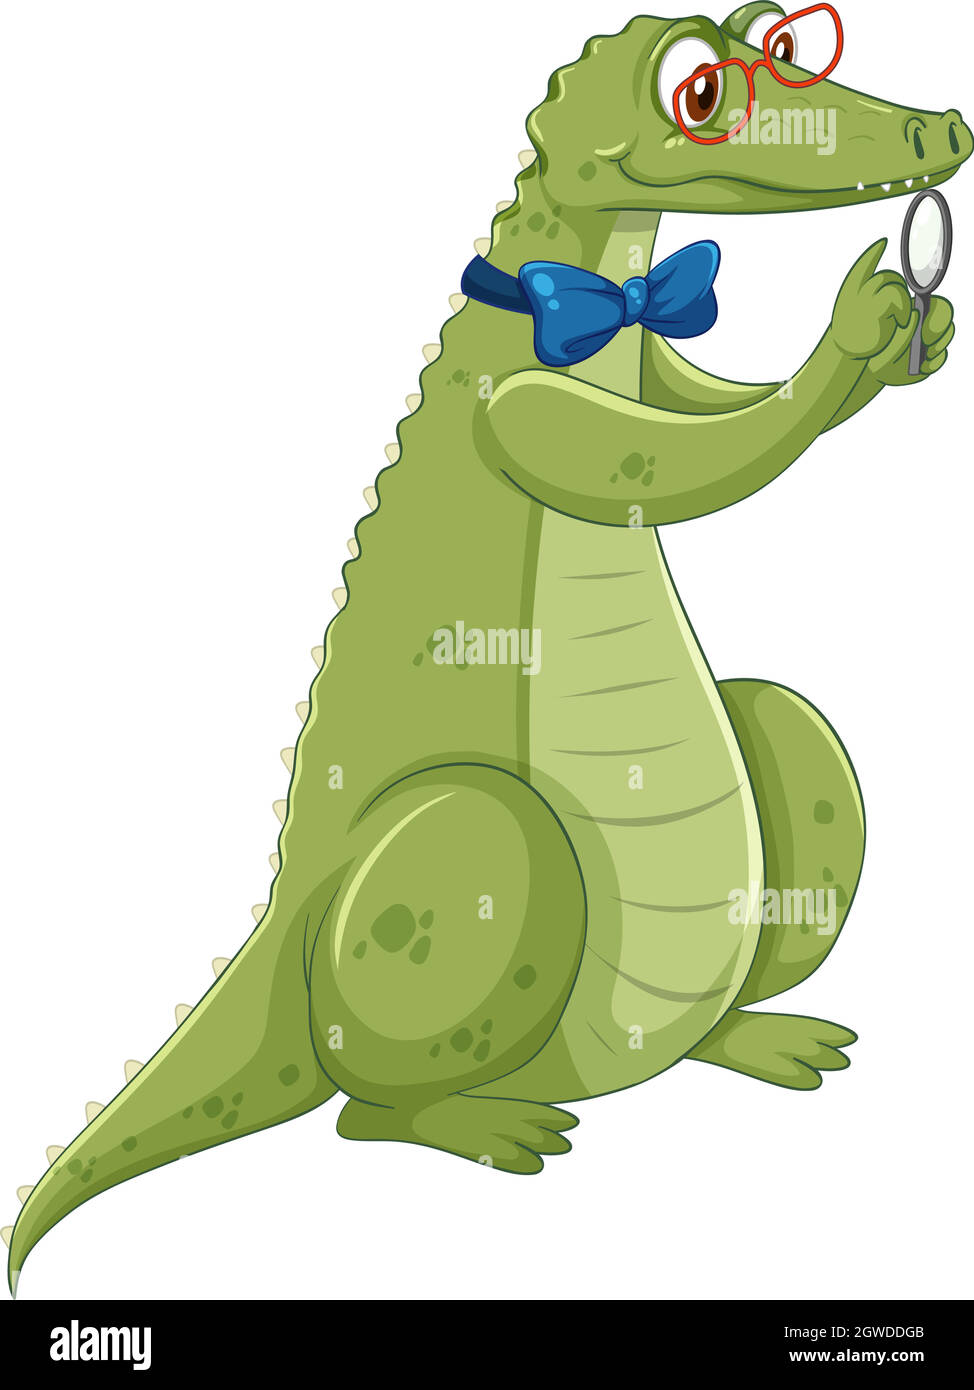 Personnage de dessin animé crocodile nerdy isolé sur fond blanc Illustration de Vecteur